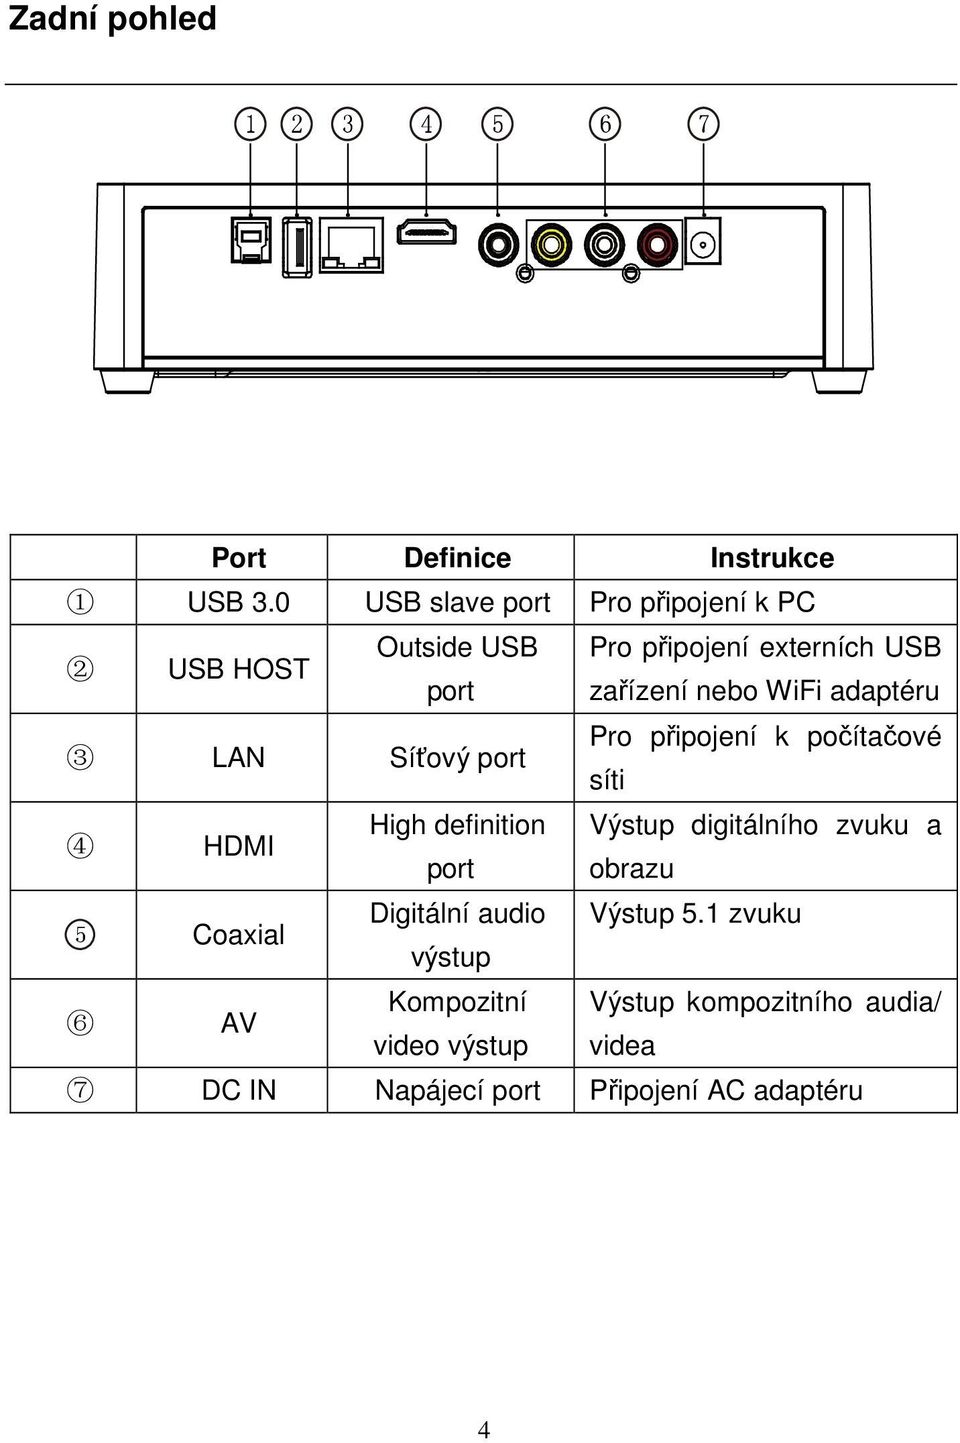 WiFi adaptéru 3 LAN Síťový port Pro připojení k počítačové síti 4 HDMI High definition Výstup digitálního